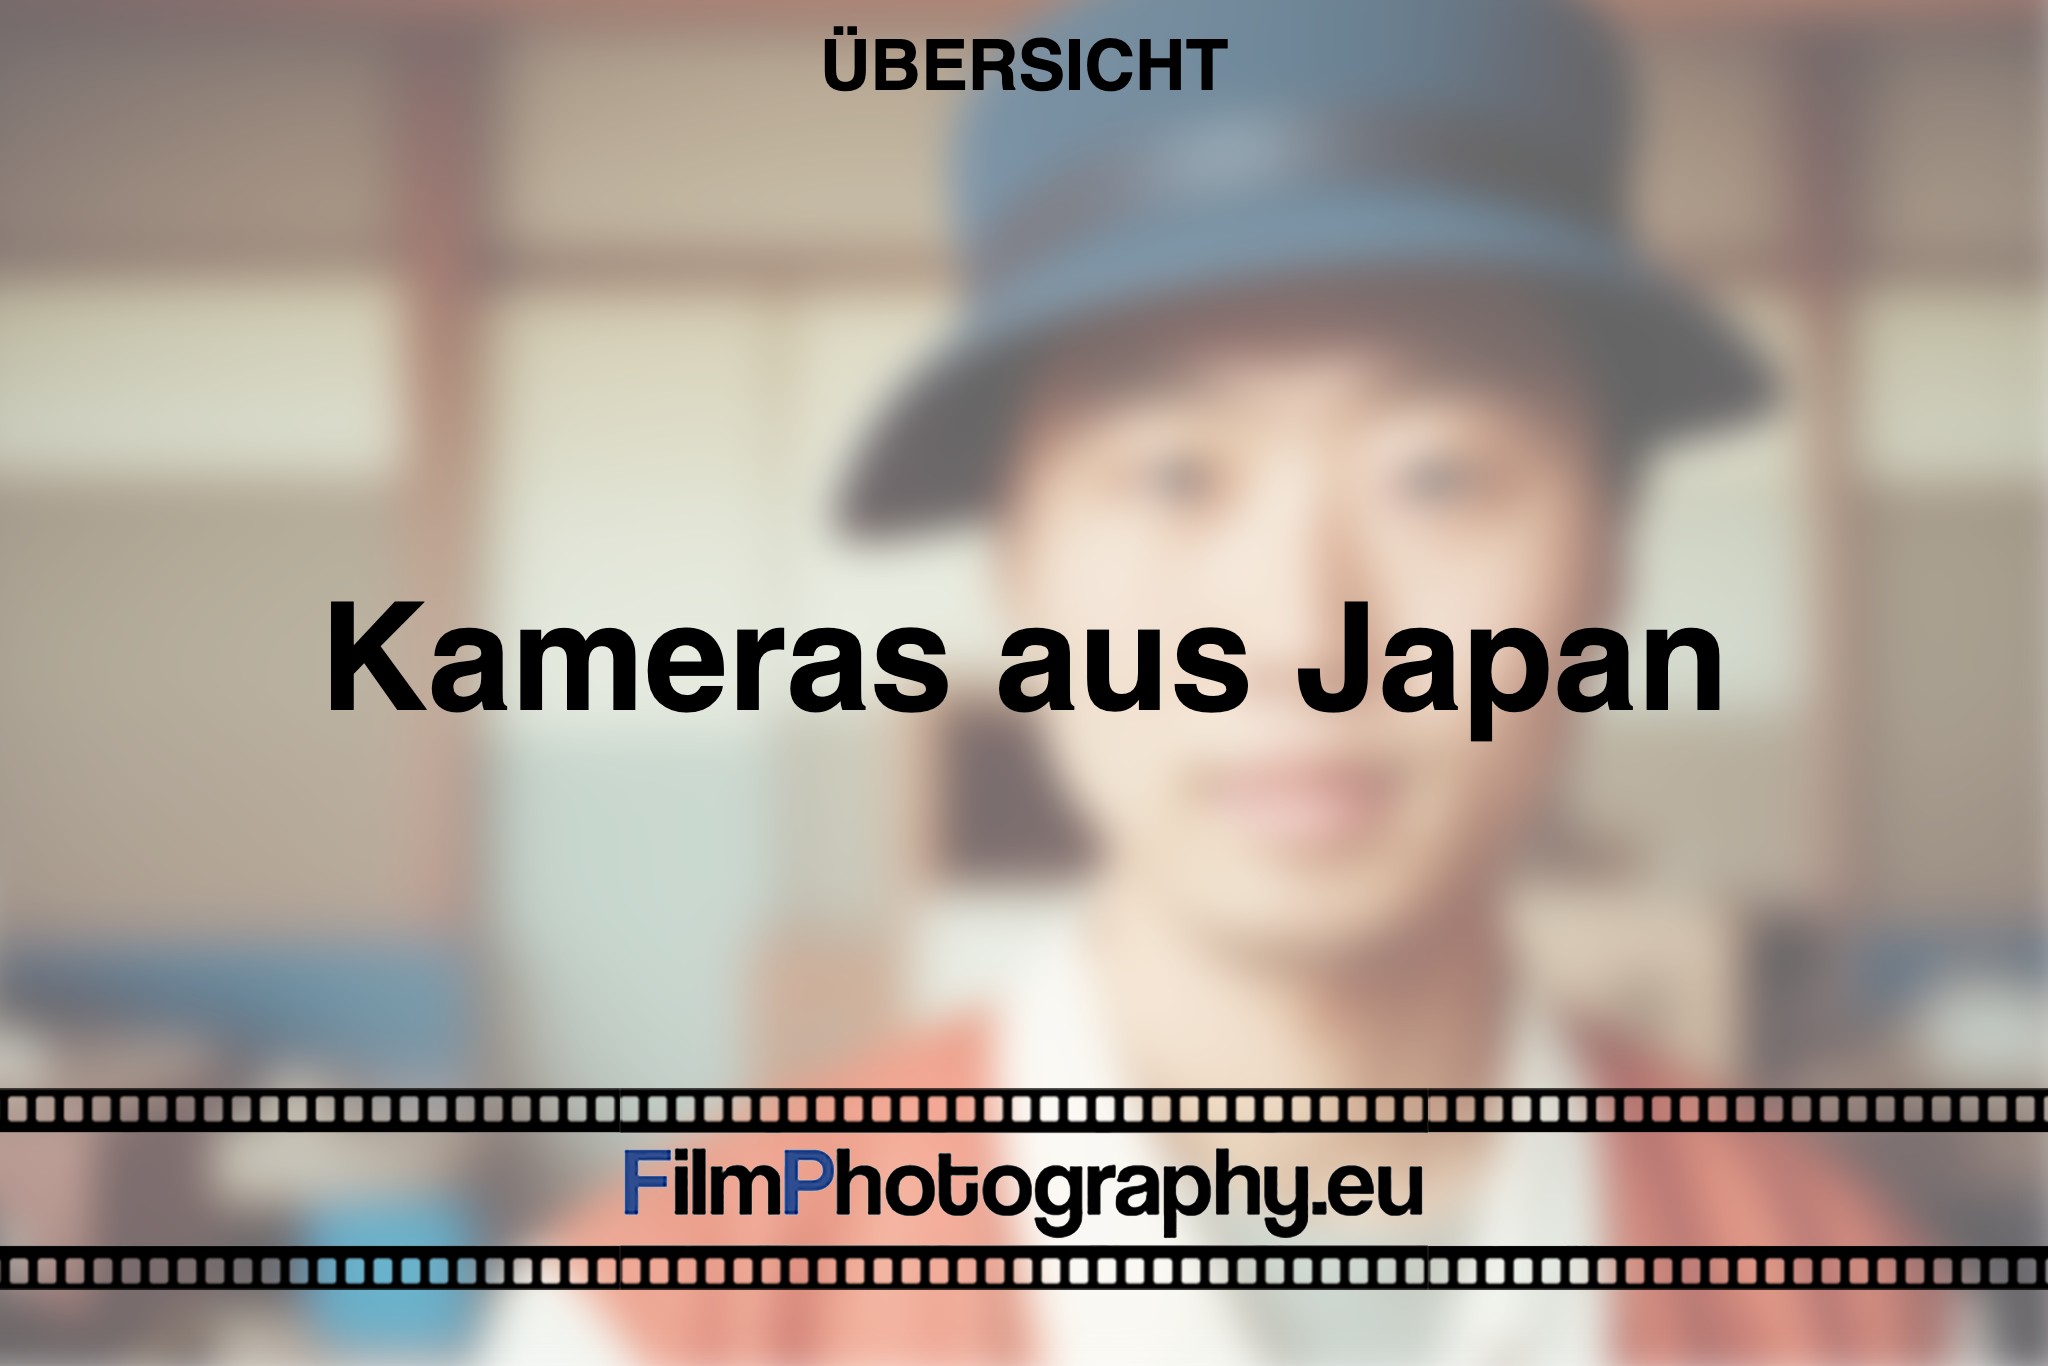 kameras-aus-Japan-produktion-foto-bnv